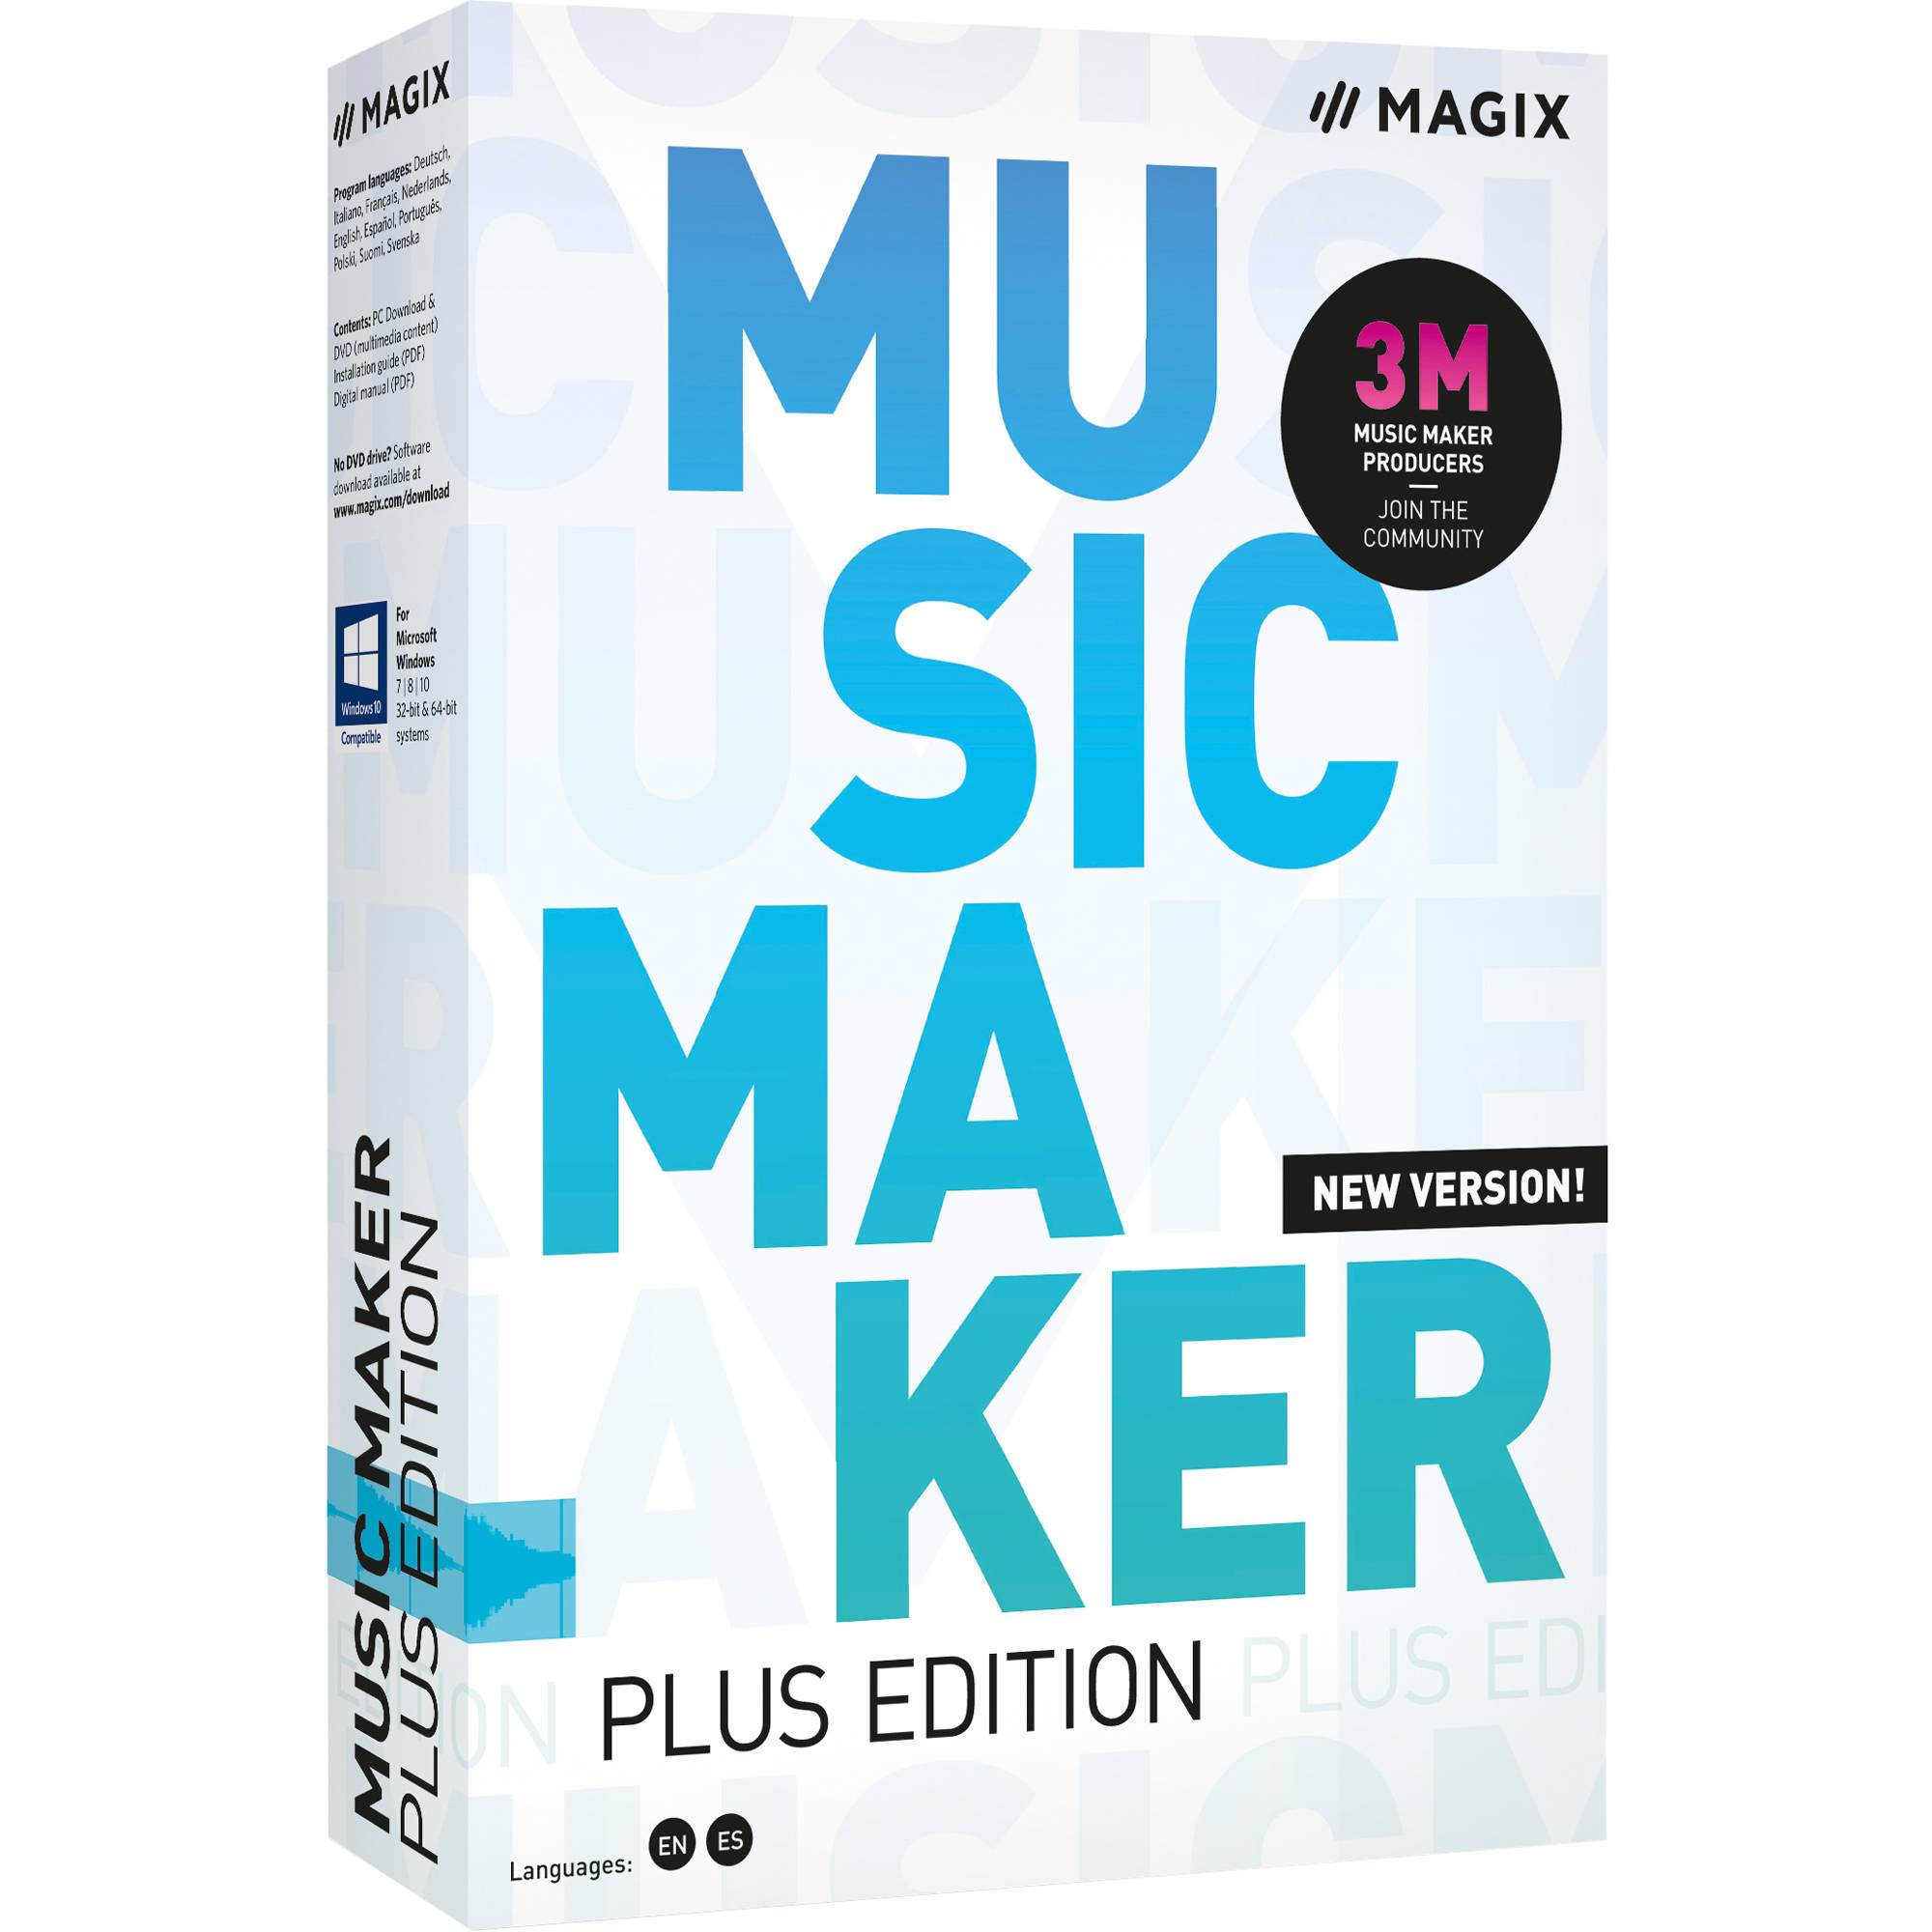 magix beat maker